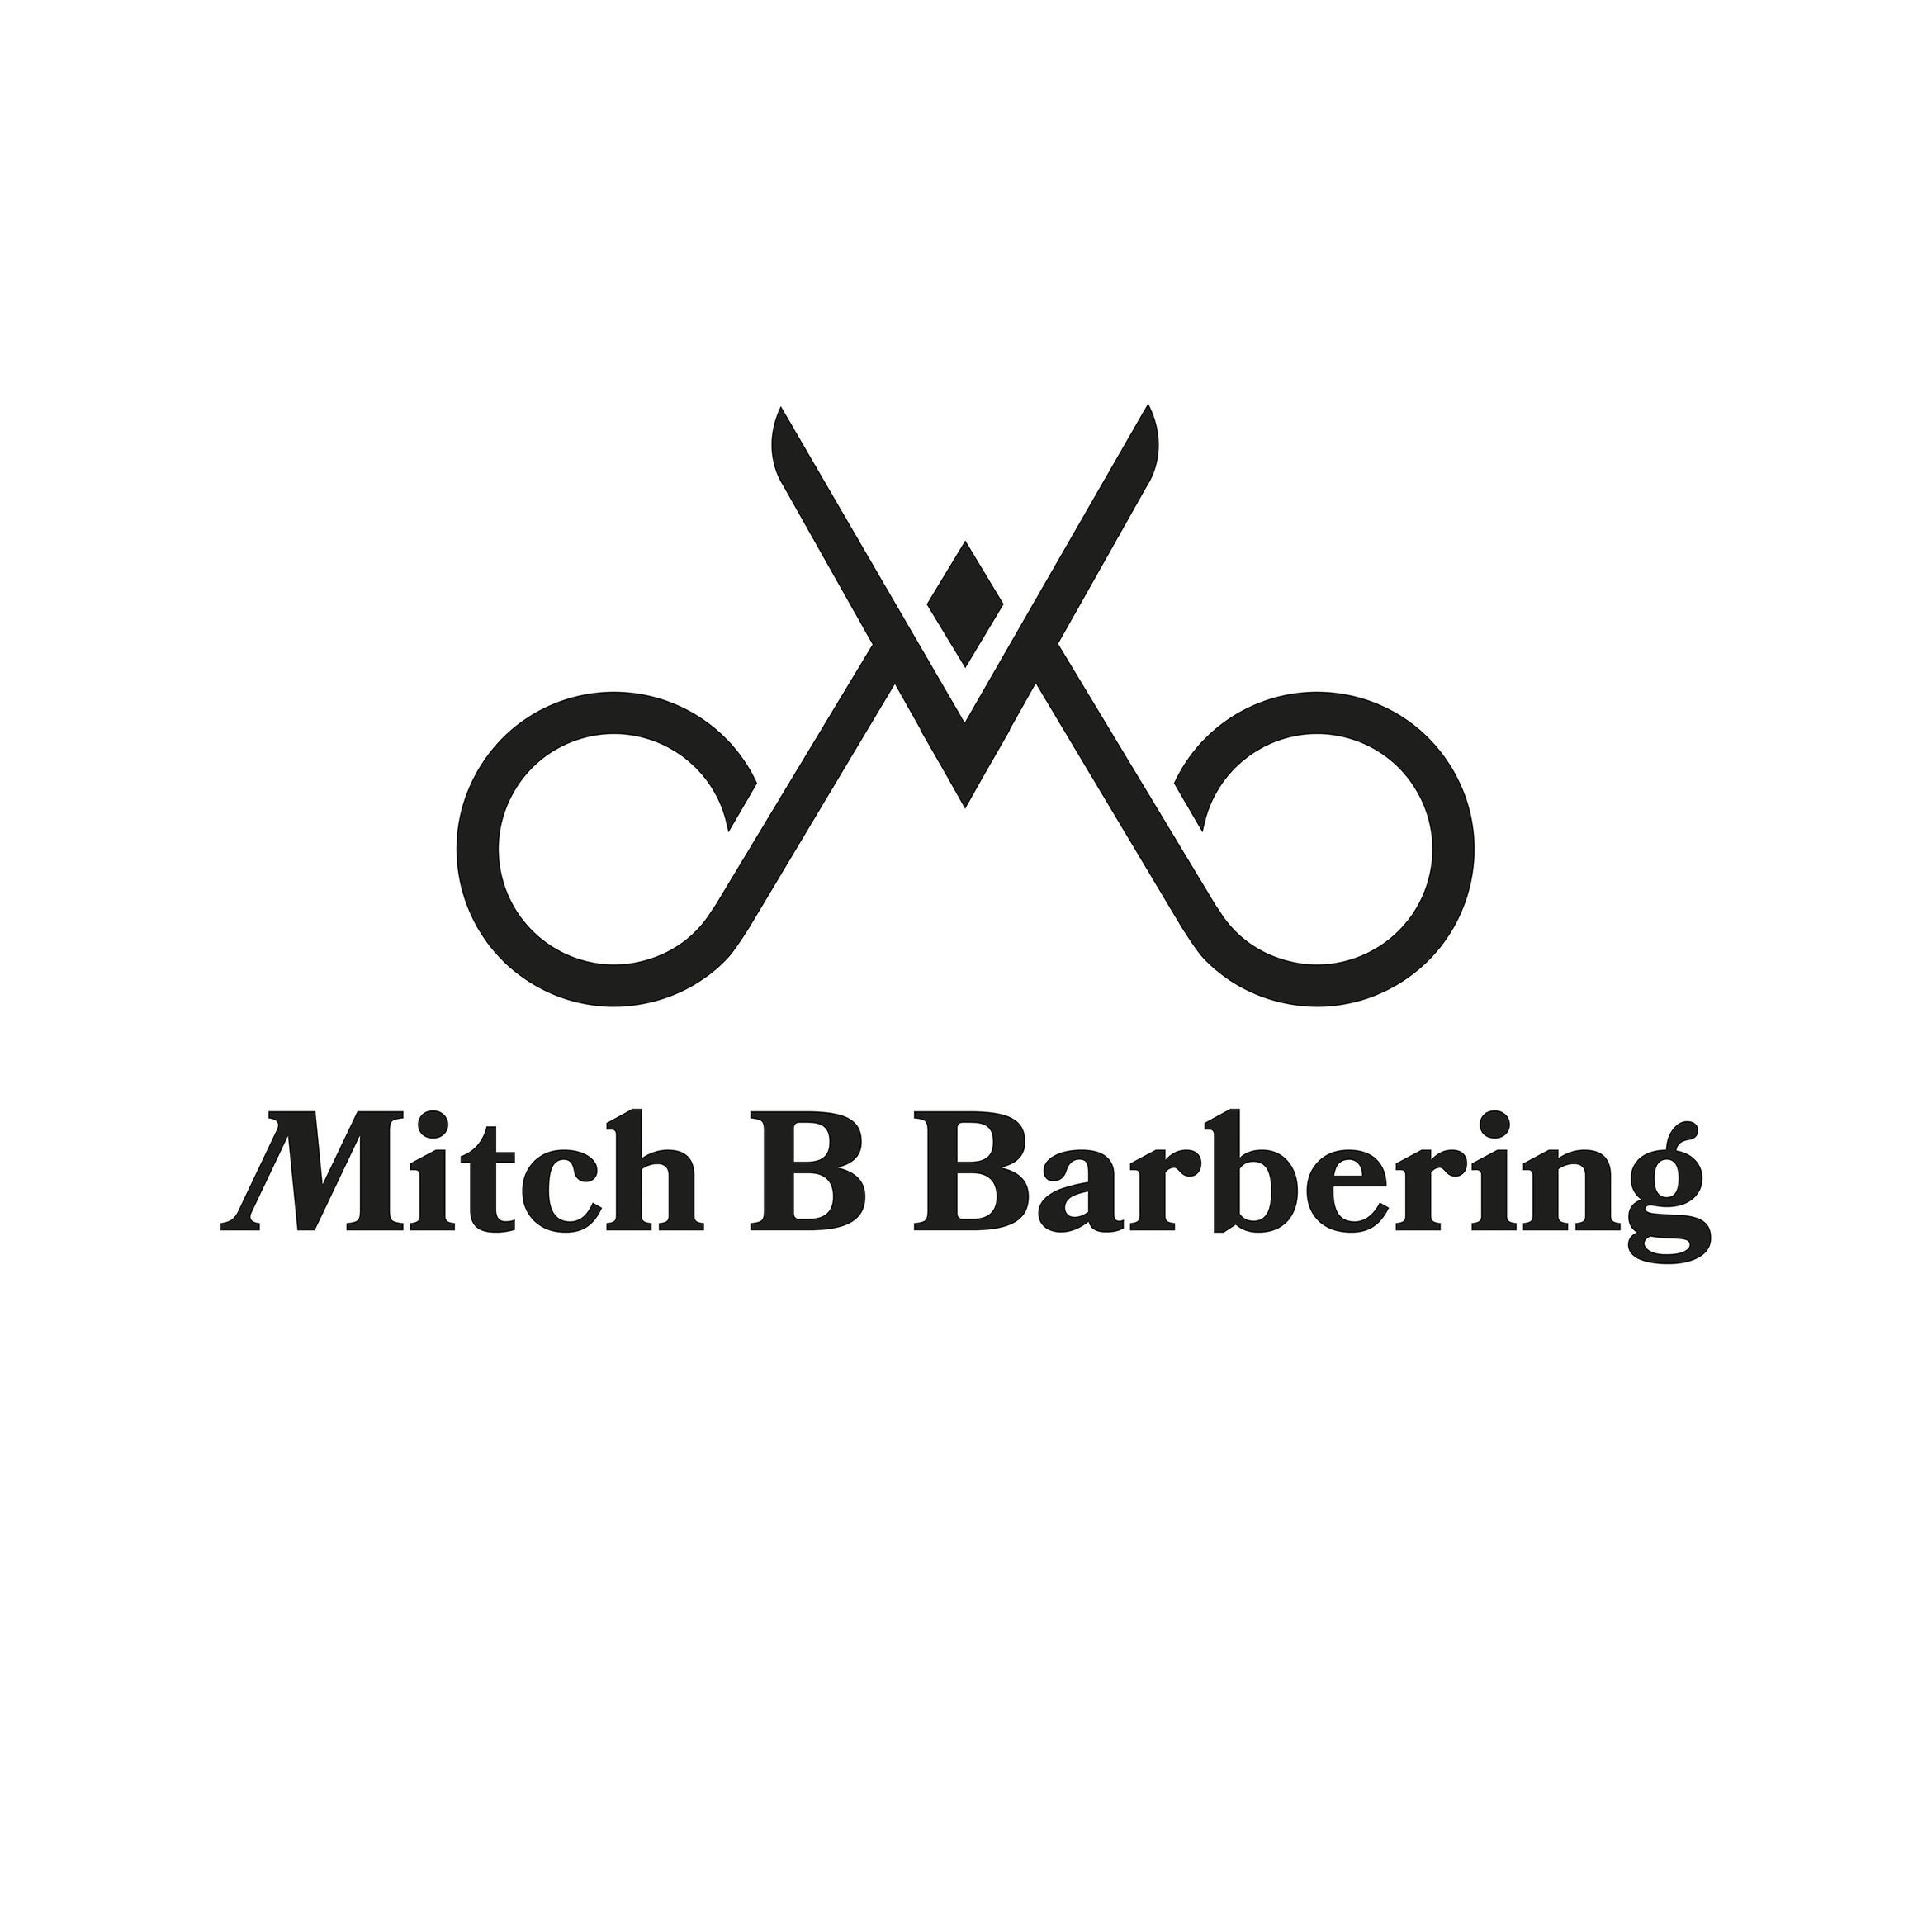 Mitch B Barbering, Mitch B Barbering @ Bloom Hair Company, 175 Cross Street, M33 7JQ, Sale